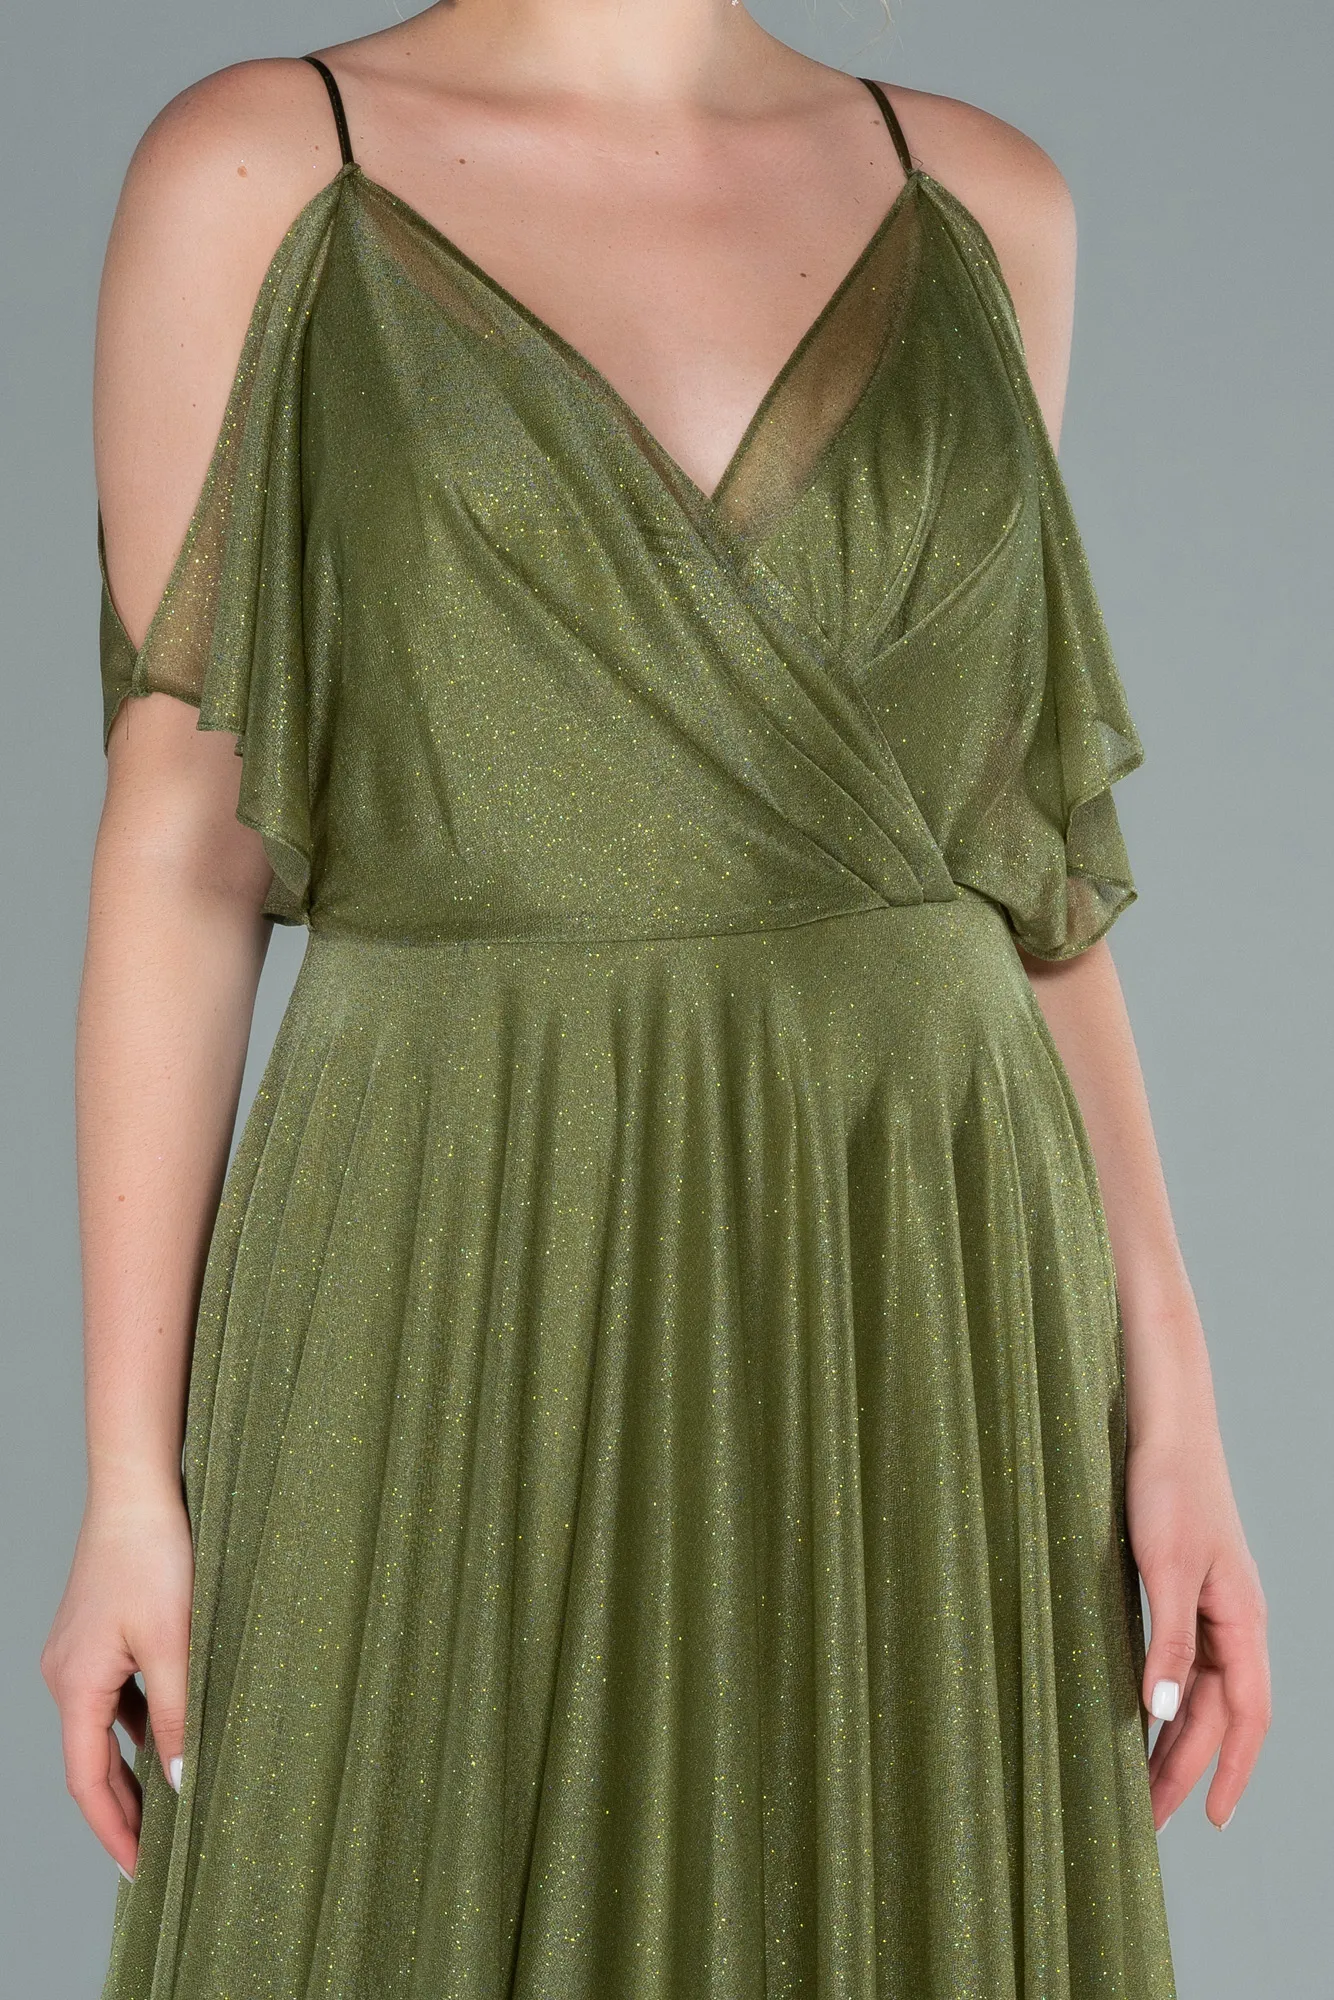 Oil Green-Long Evening Dress ABU2484